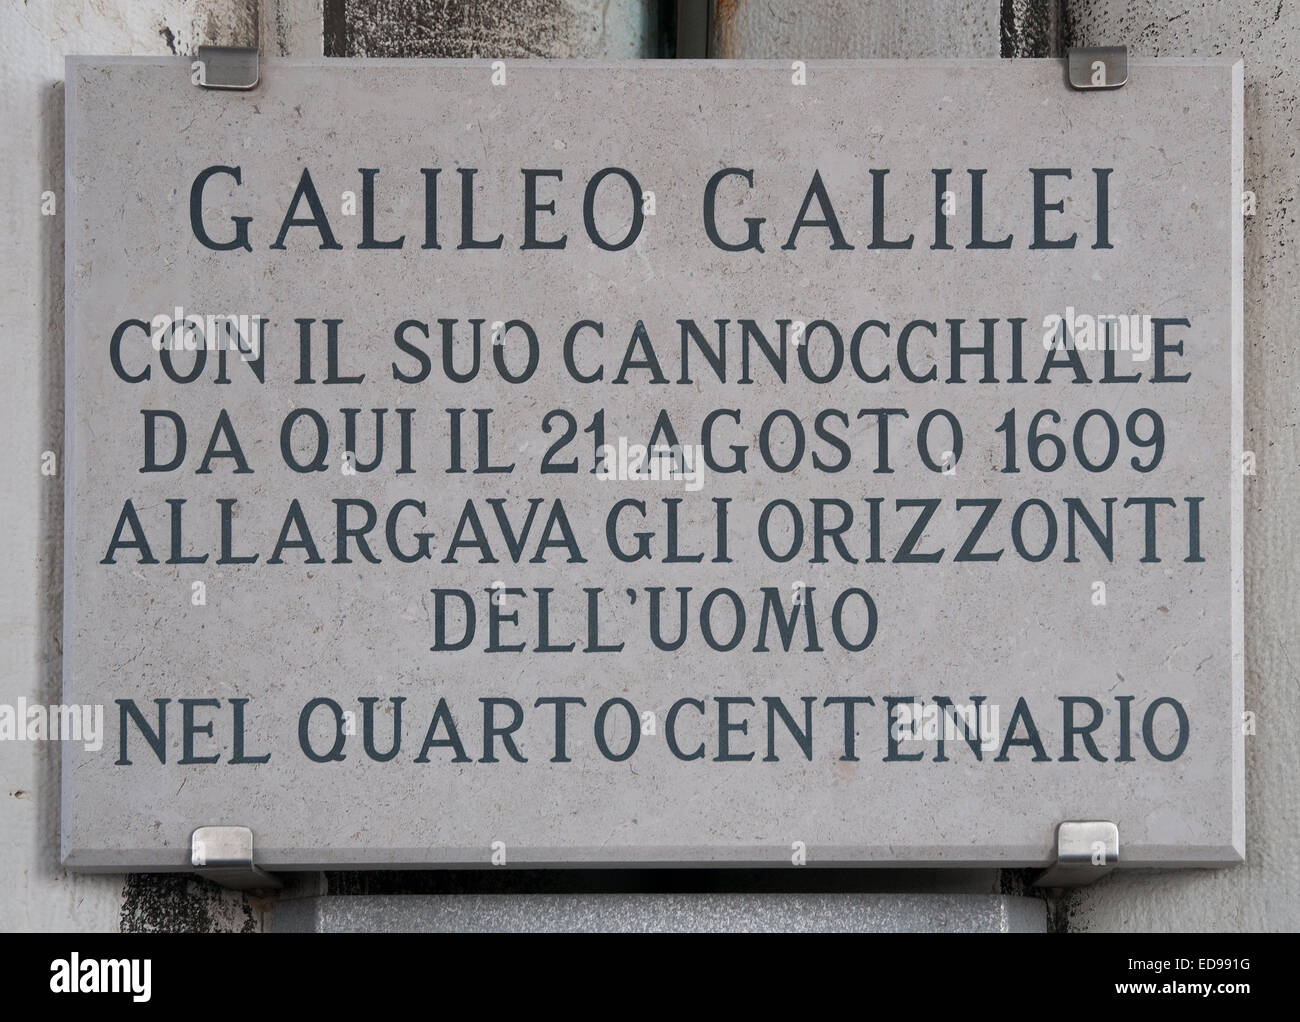 Placca incisa in St Marks Campanile Venezia Italia commemora la dimostrazione Galileo il suo cannocchiale al Doge qui il pla Foto Stock